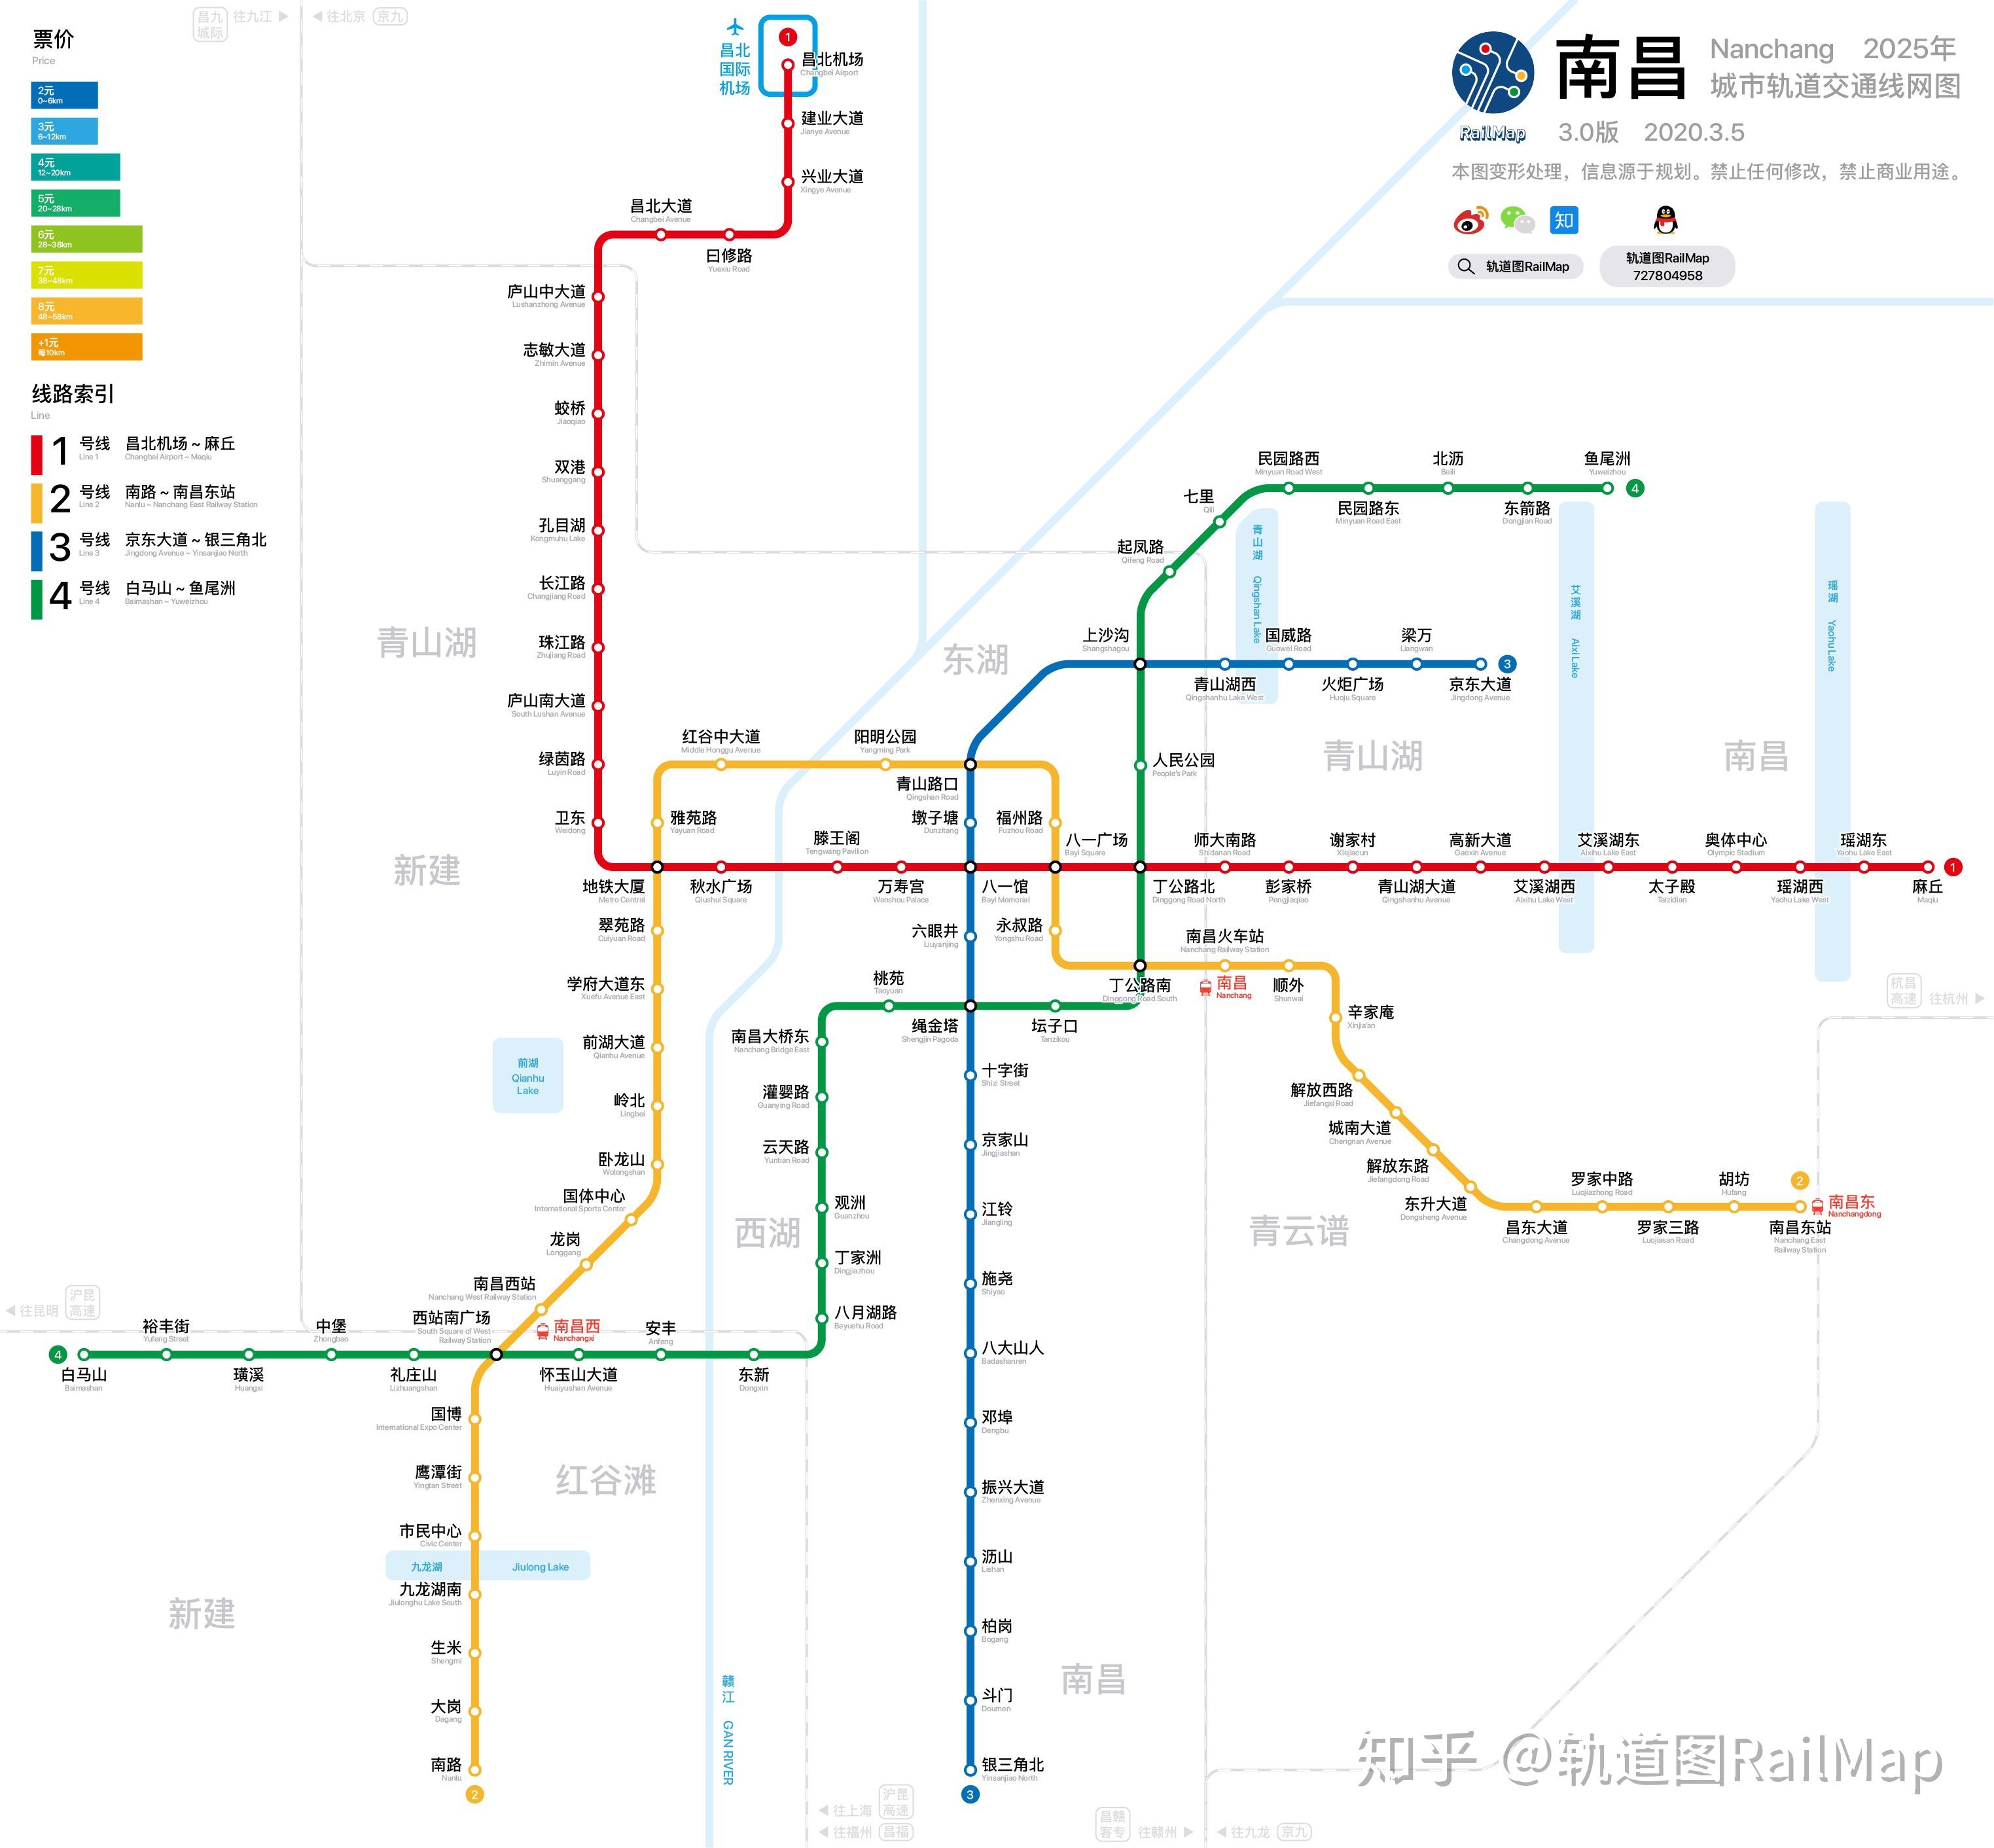 【轨道图railmap】南昌地铁线网图2025年/当前